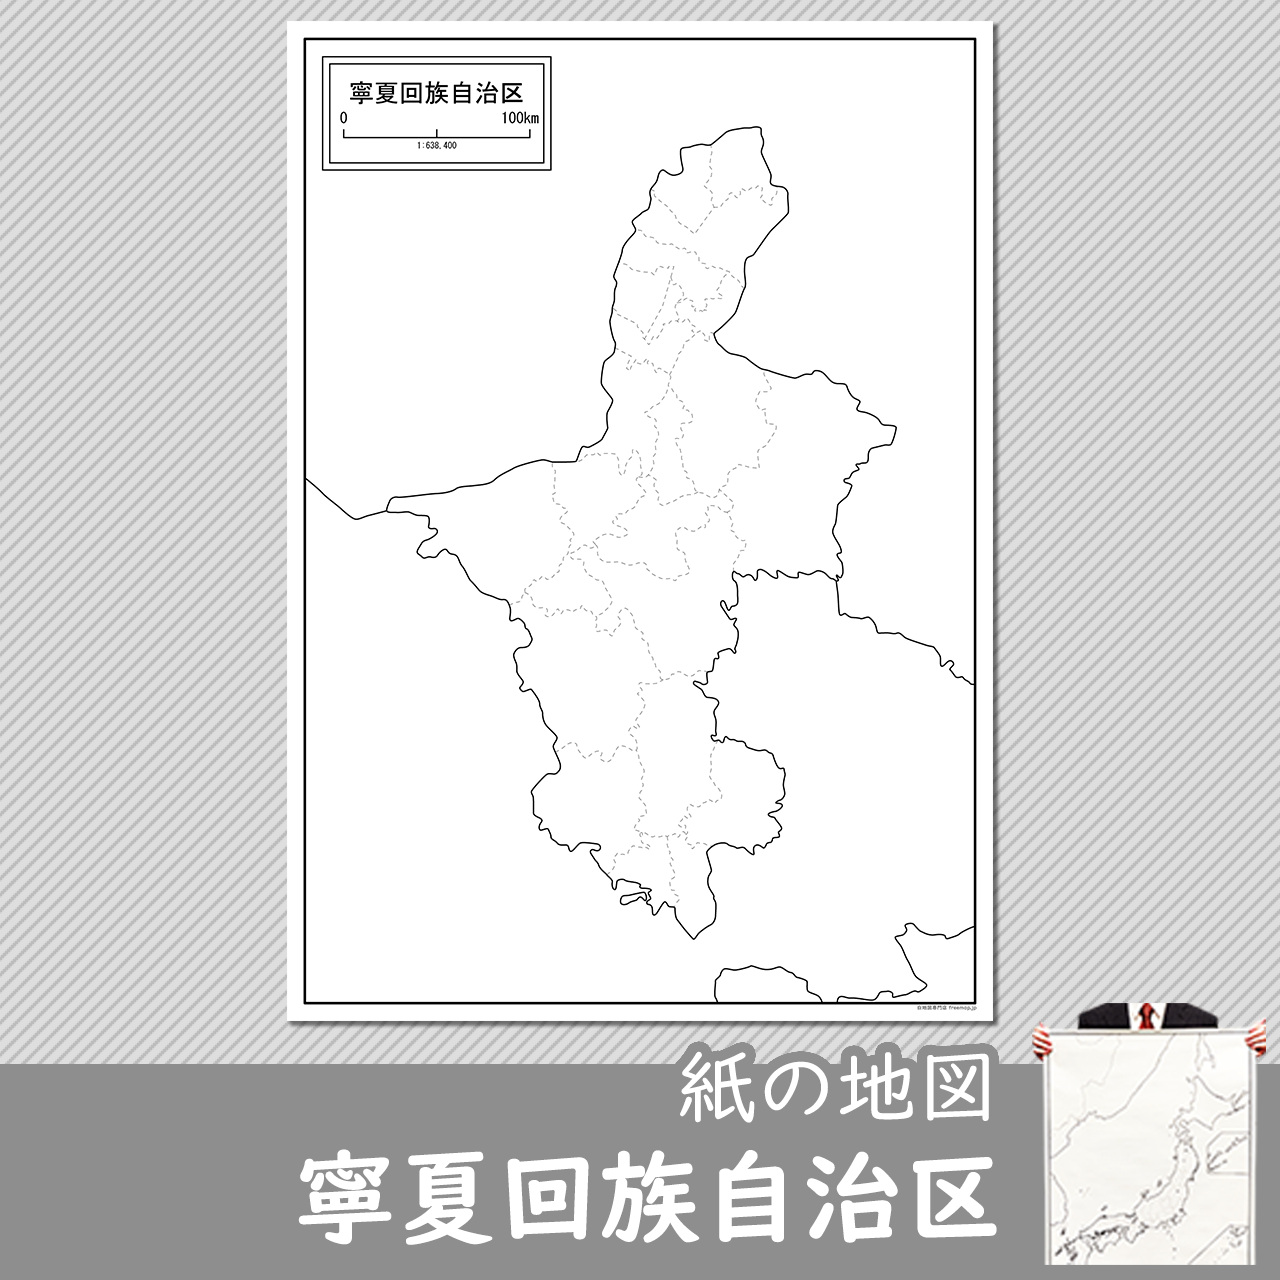 寧夏回族自治区（ねいかかいぞく）の紙の白地図のサムネイル